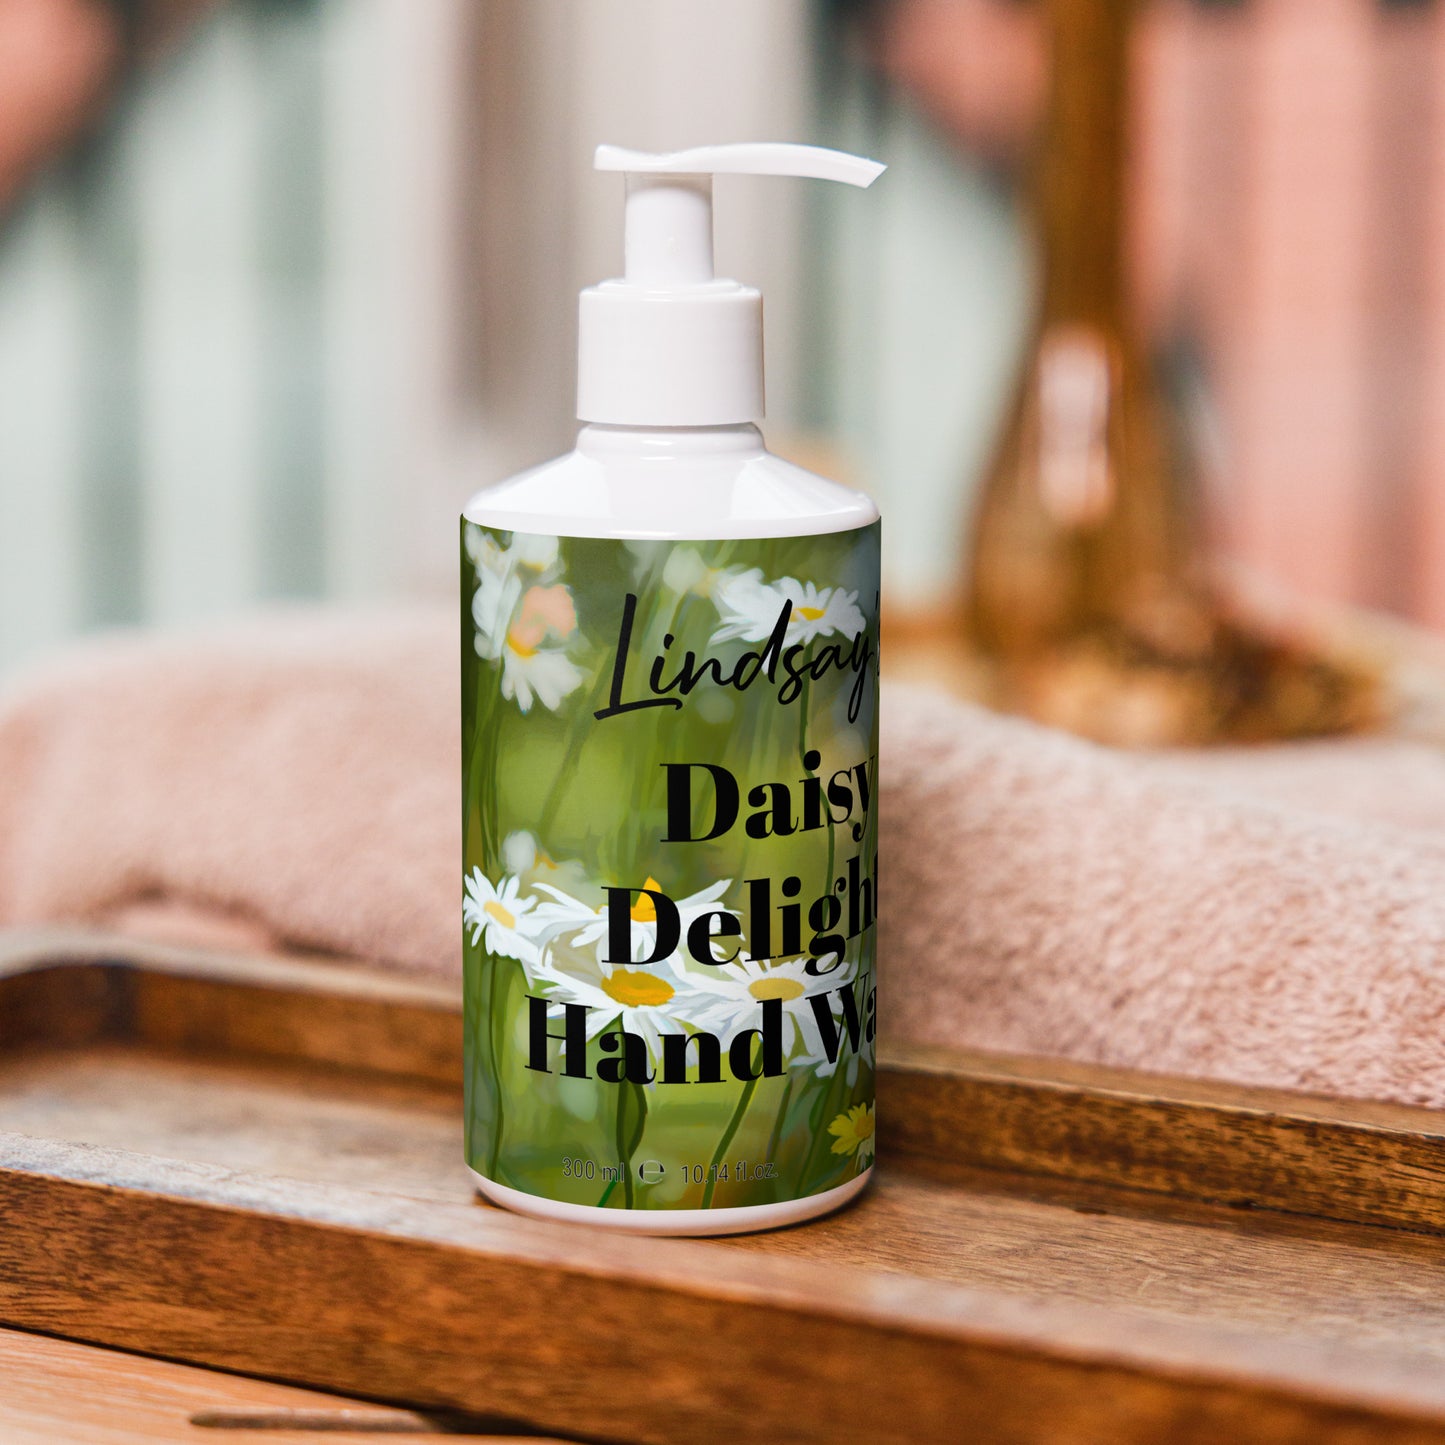 Lindsay's Daisy Delight Hand Wash